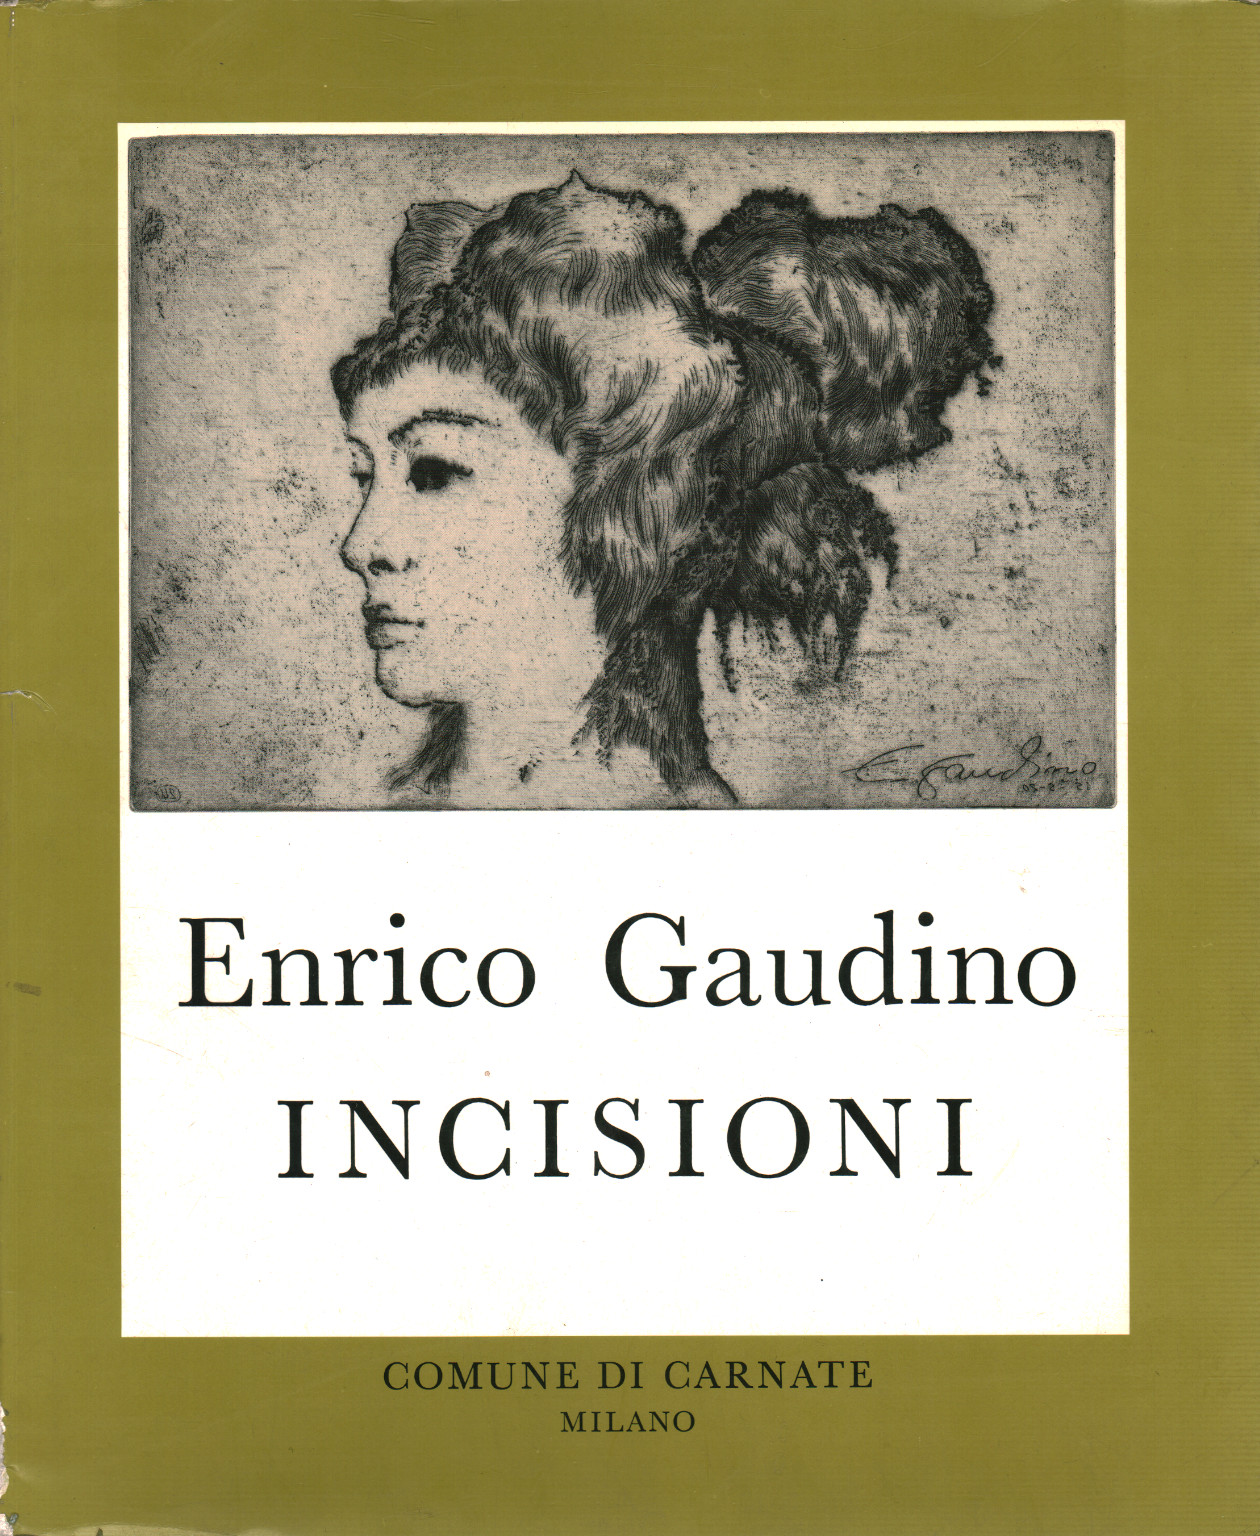 Incisioni, s.a.,Enrico Gaudino Incisioni